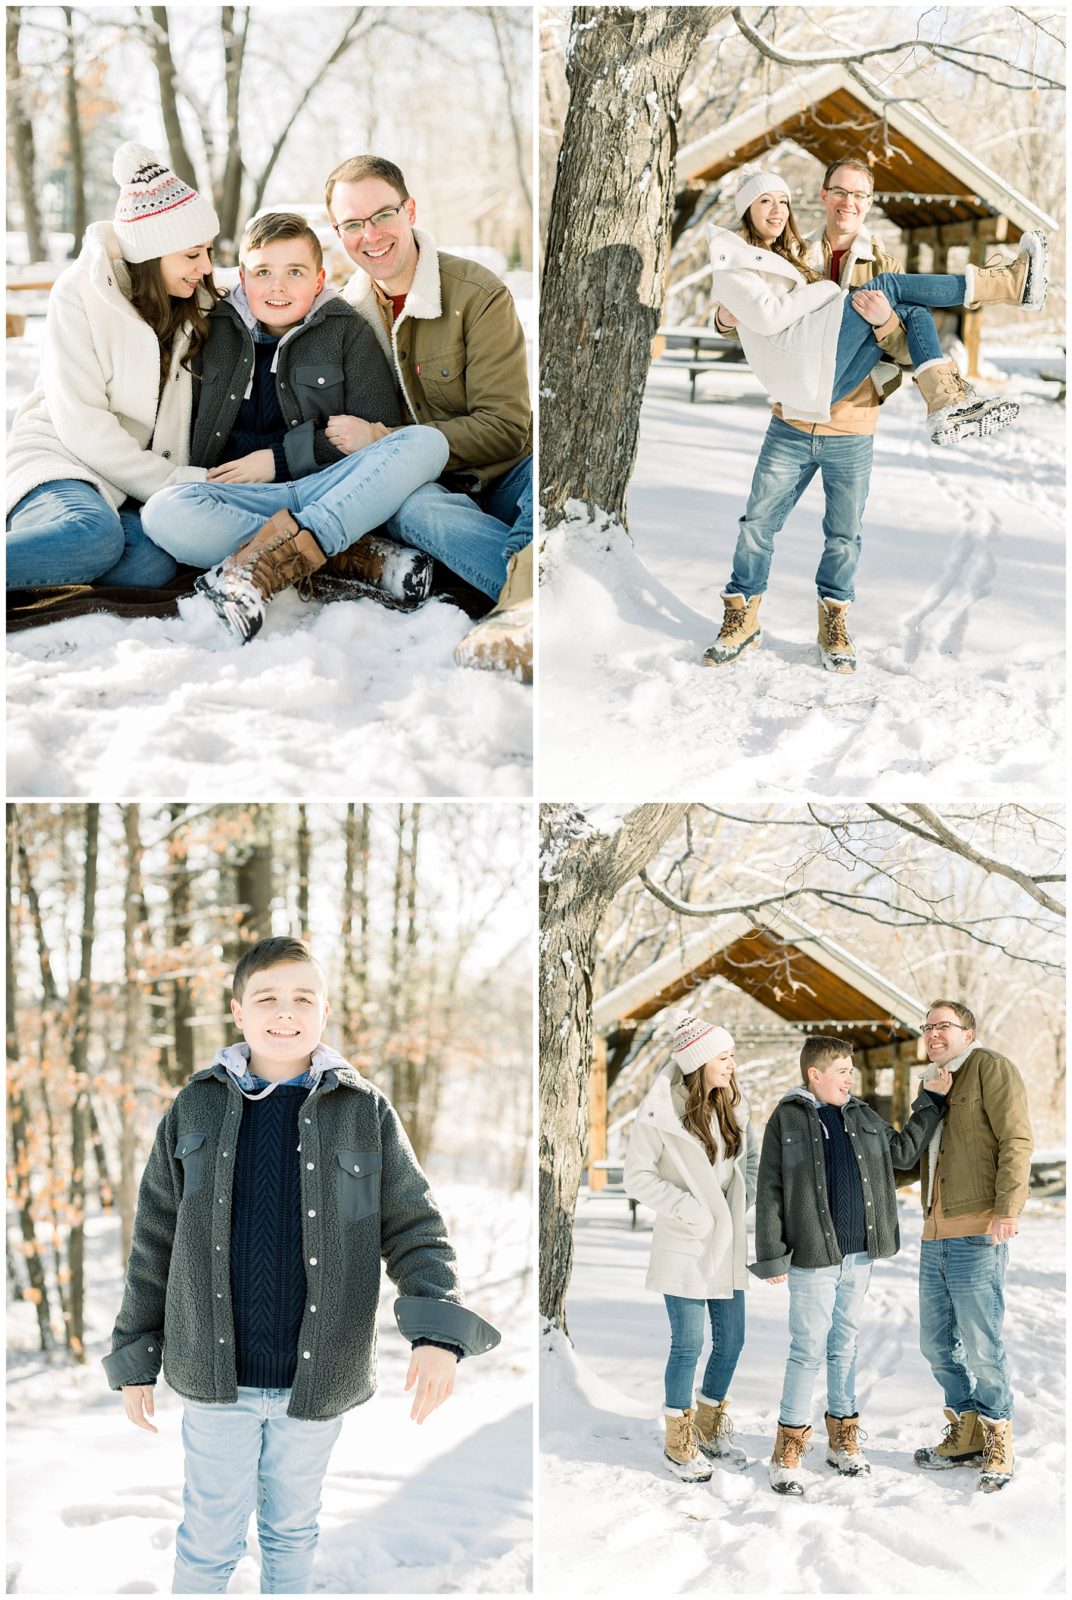 Winter Wonderland family session